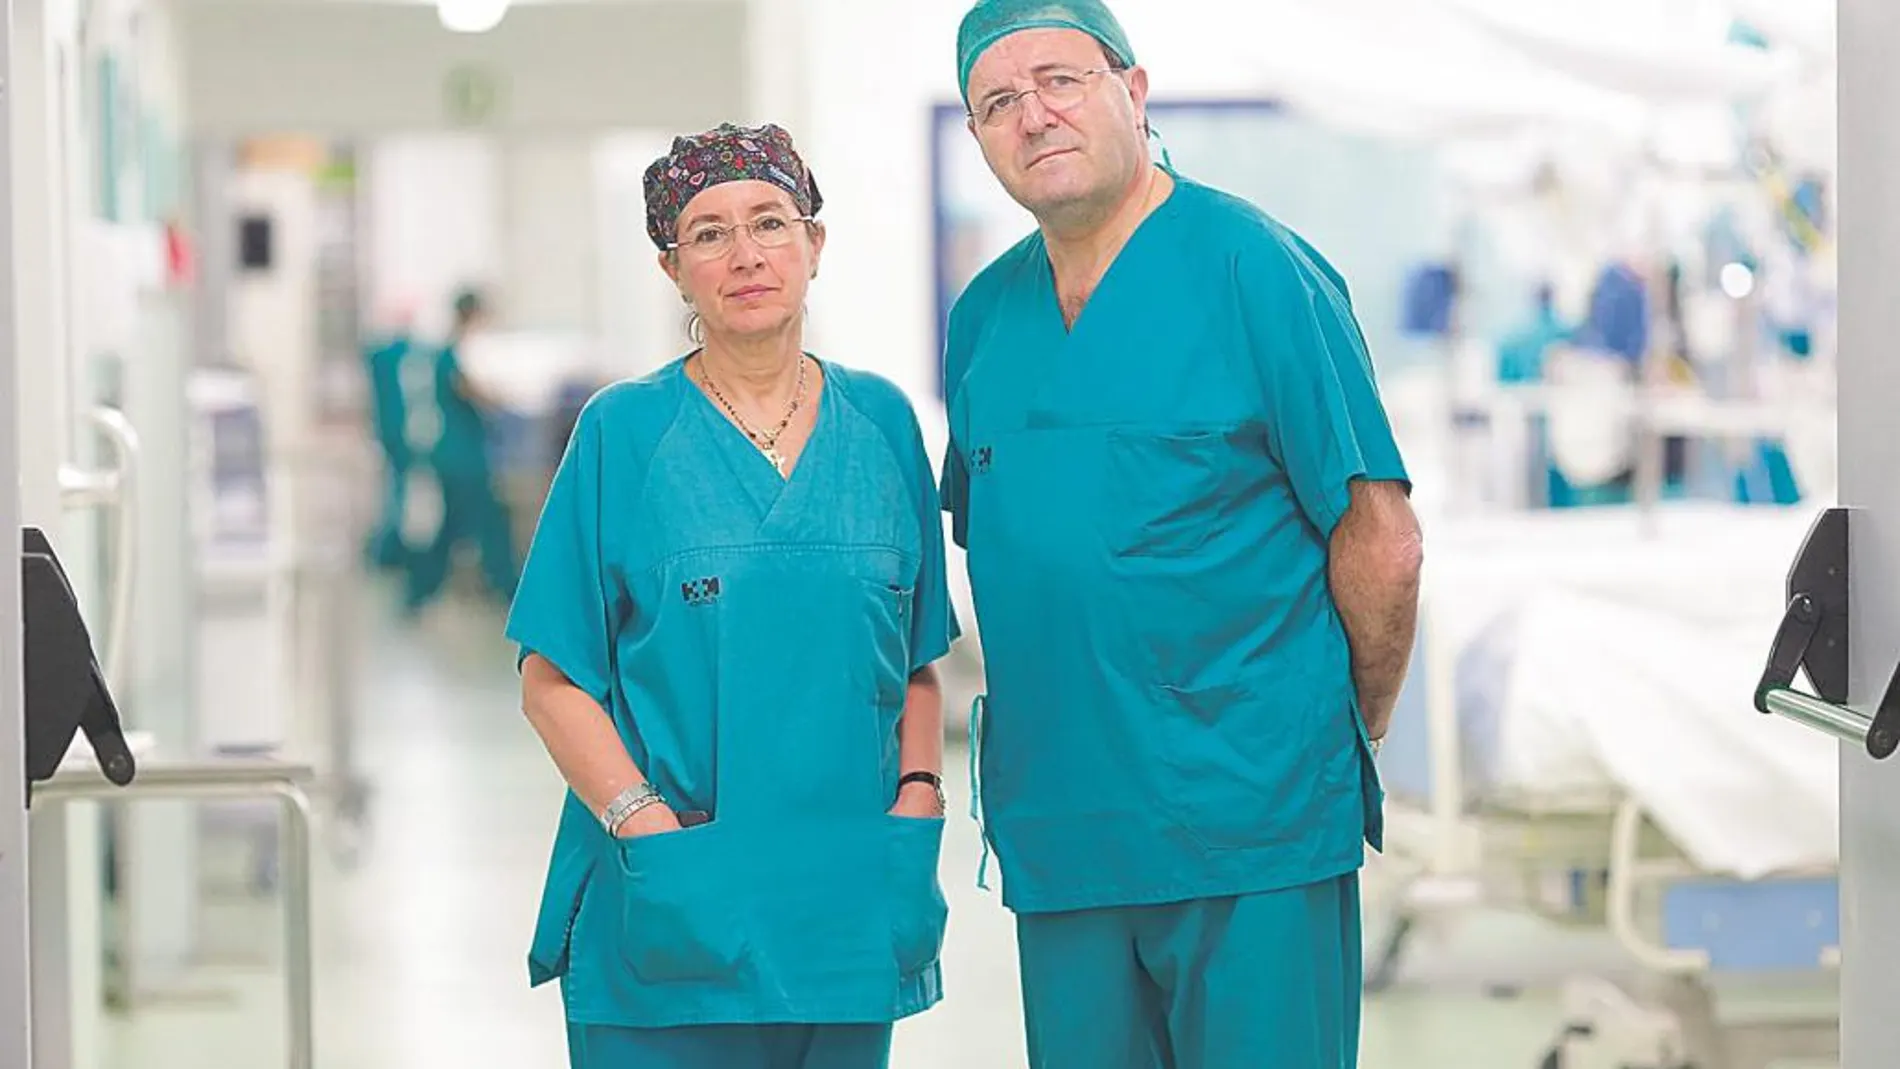 Dr. Emilio Vicente y Dra. Yolanda Quijano / Director y Co-directora del Servicio de Cirugía General y Digestiva del Hospital Universitario